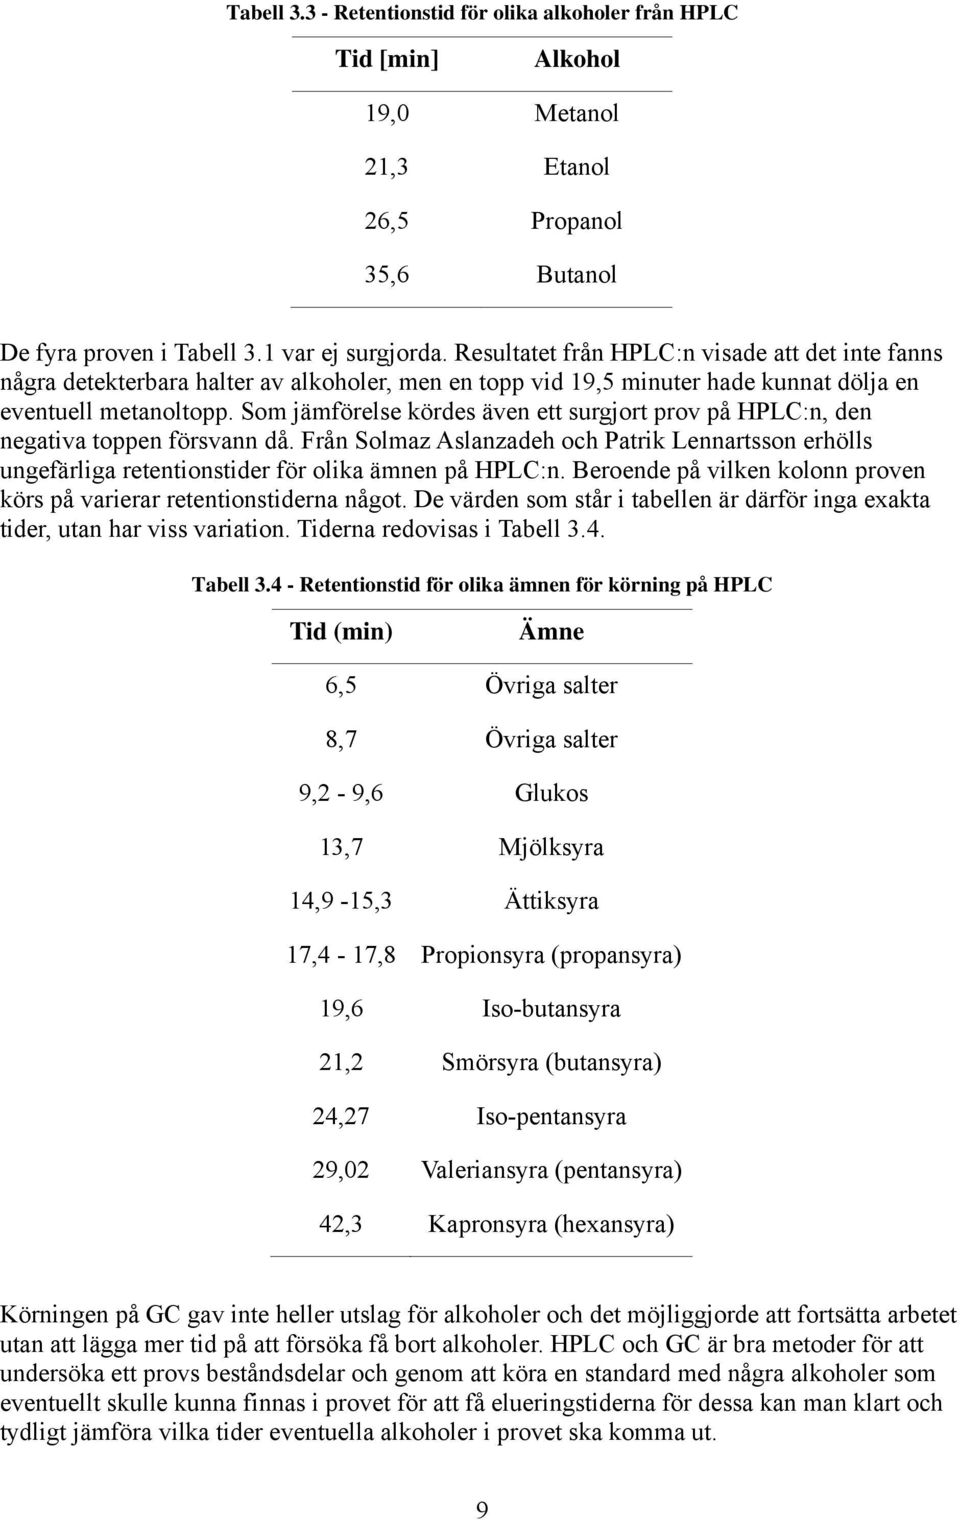 Som jämförelse kördes även ett surgjort prov på HPLC:n, den negativa toppen försvann då. Från Solmaz Aslanzadeh och Patrik Lennartsson erhölls ungefärliga retentionstider för olika ämnen på HPLC:n.